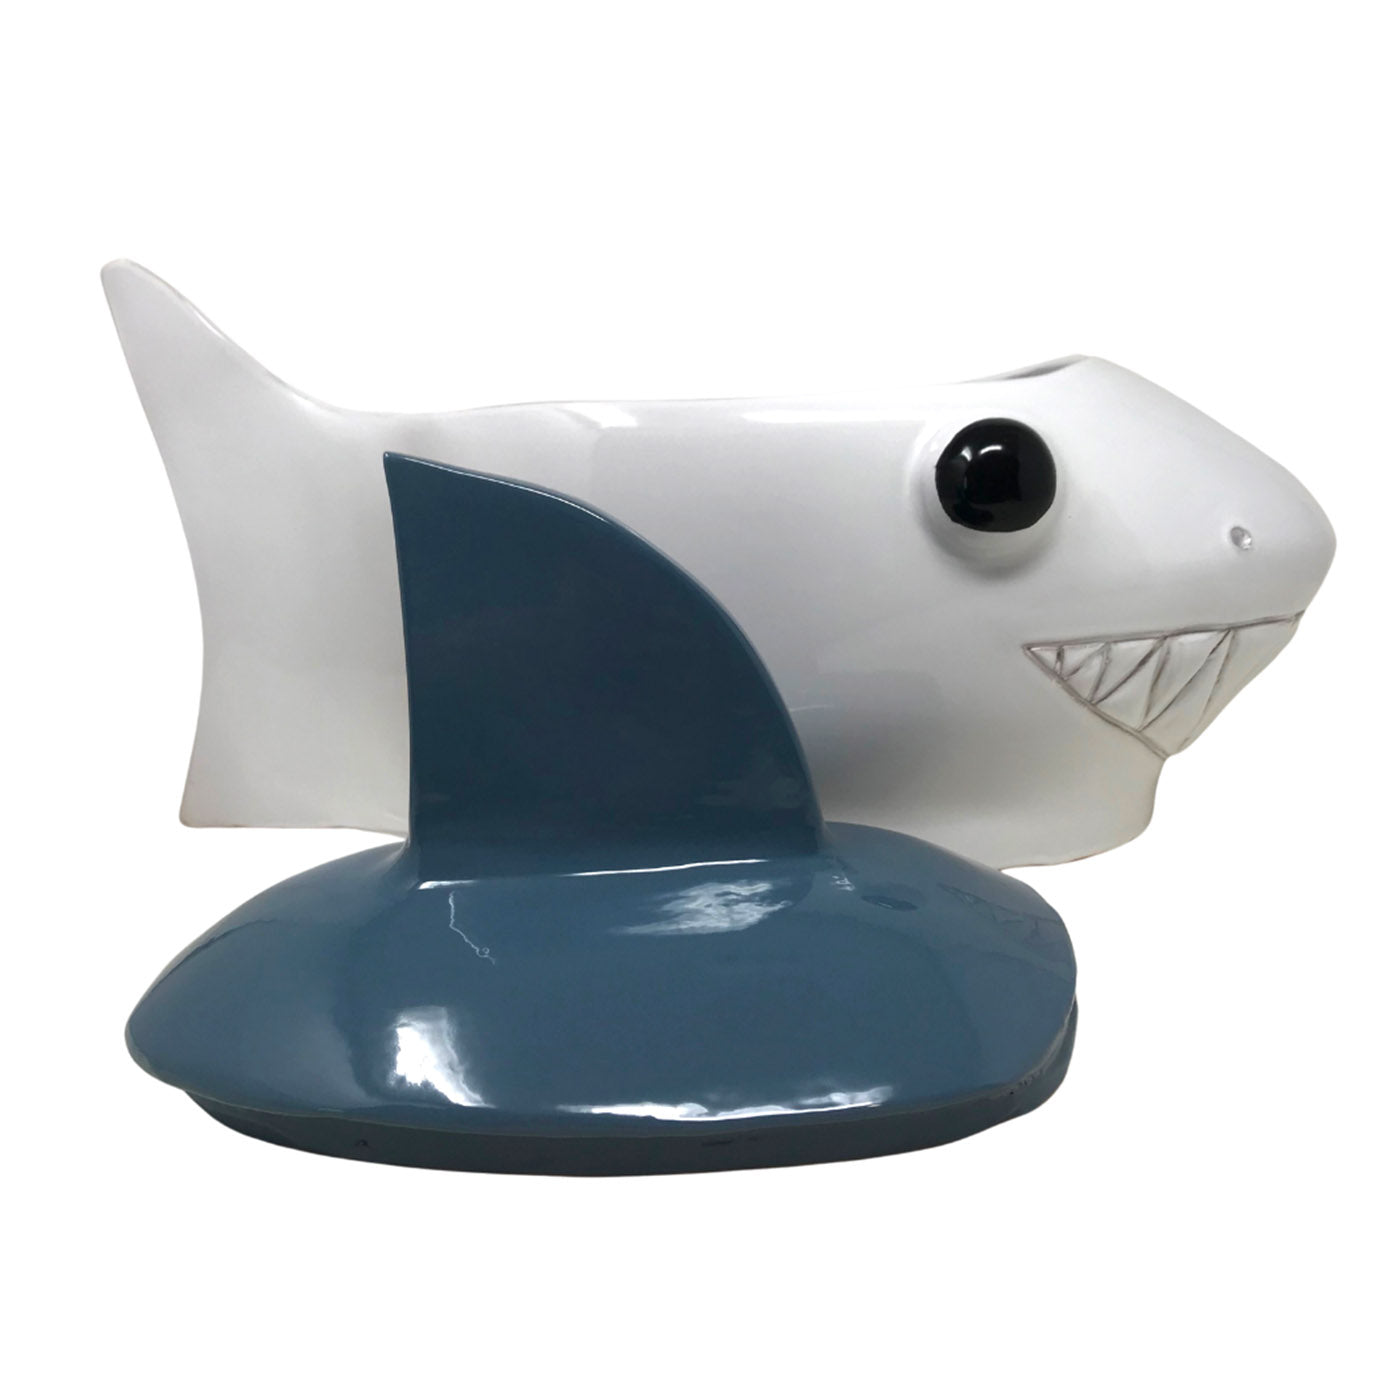 Grand récipient bleu-gris et requin blanc avec couvercle - Vue alternative 1